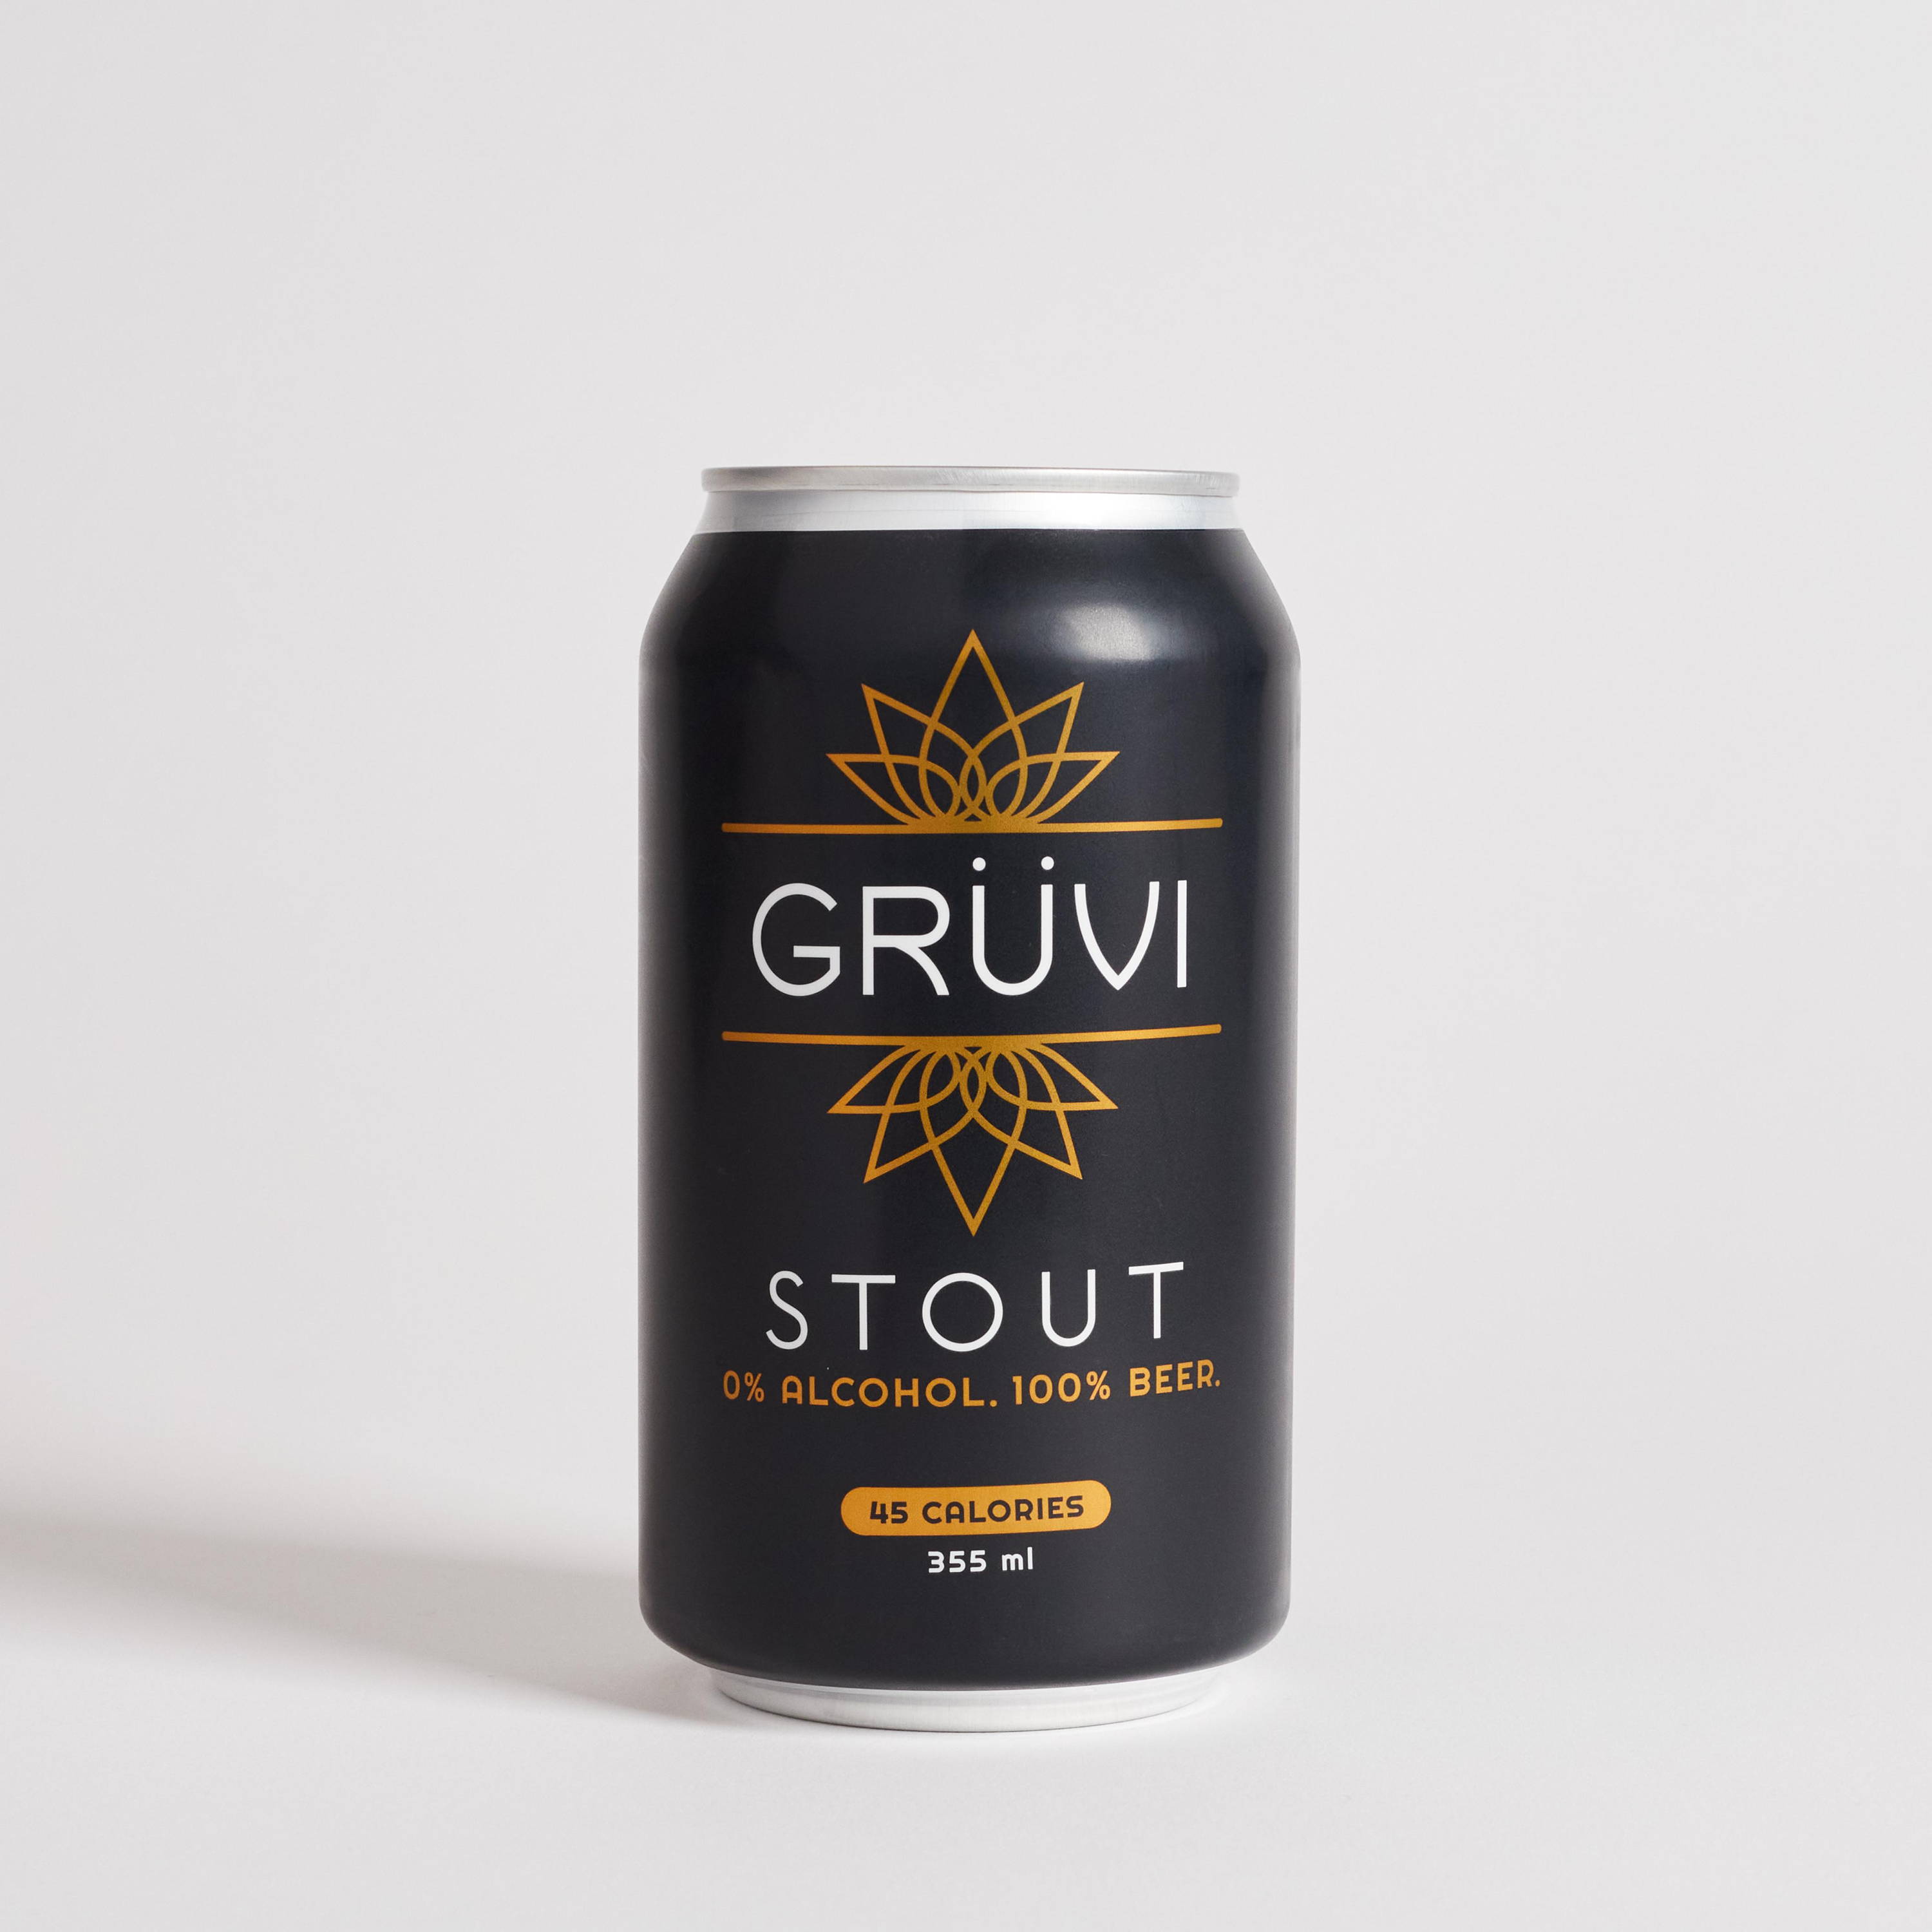 Grüvi Stout product shot on gray background